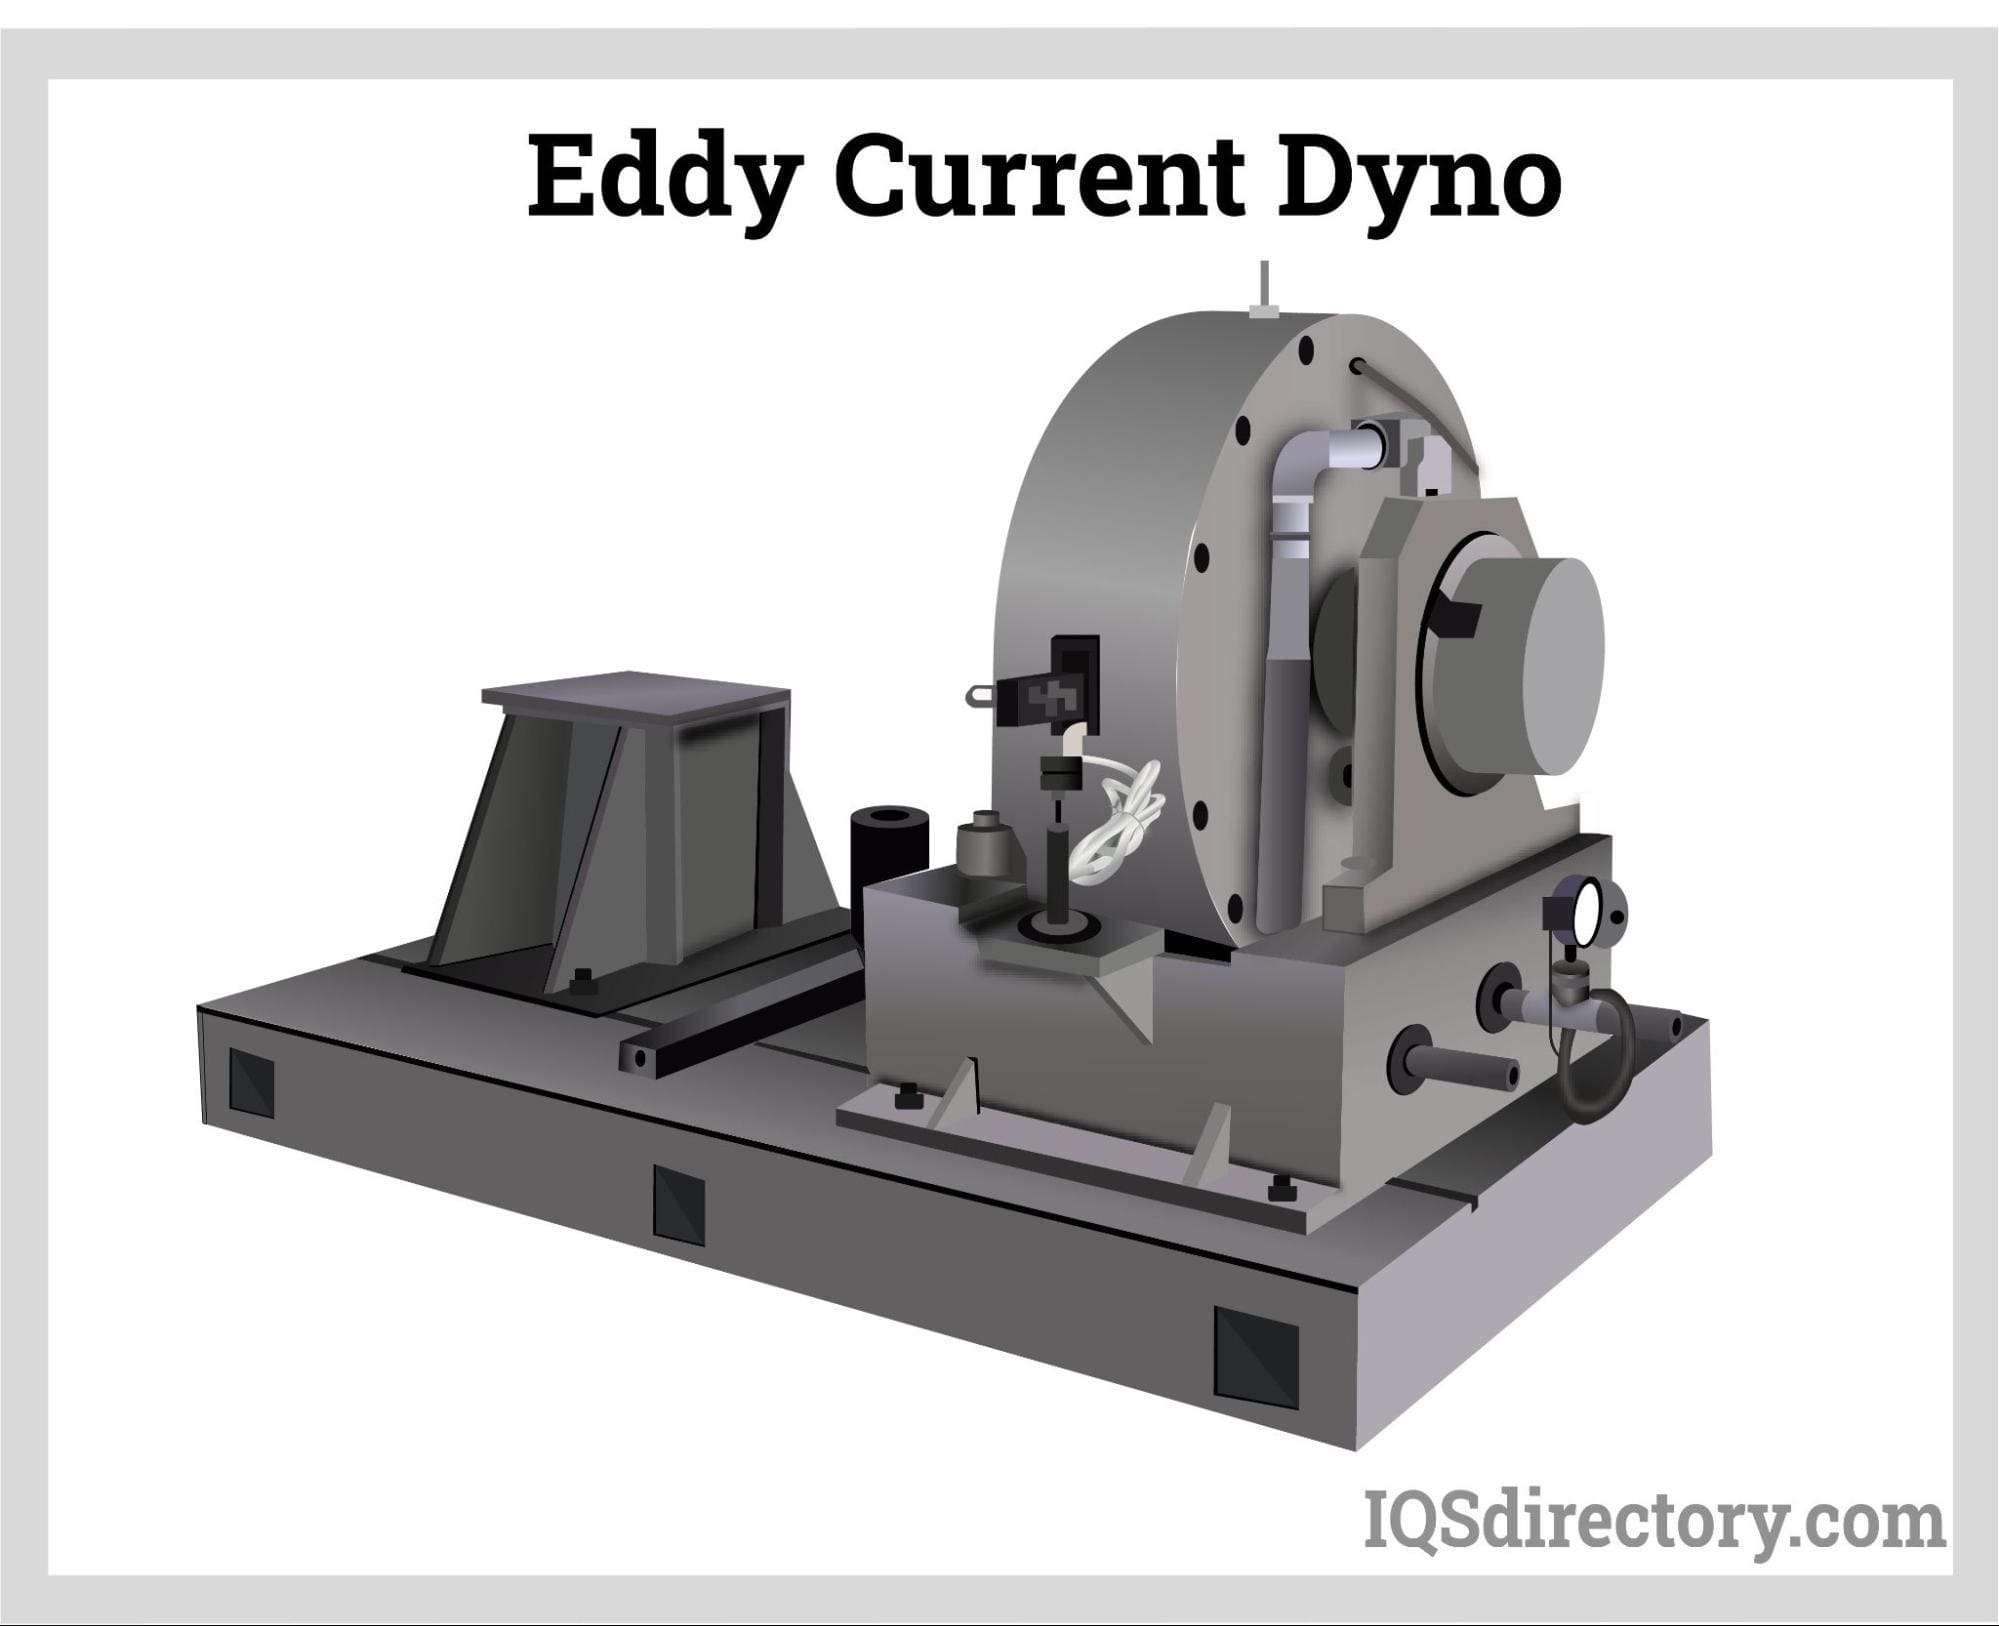 Eddy Current Dynos